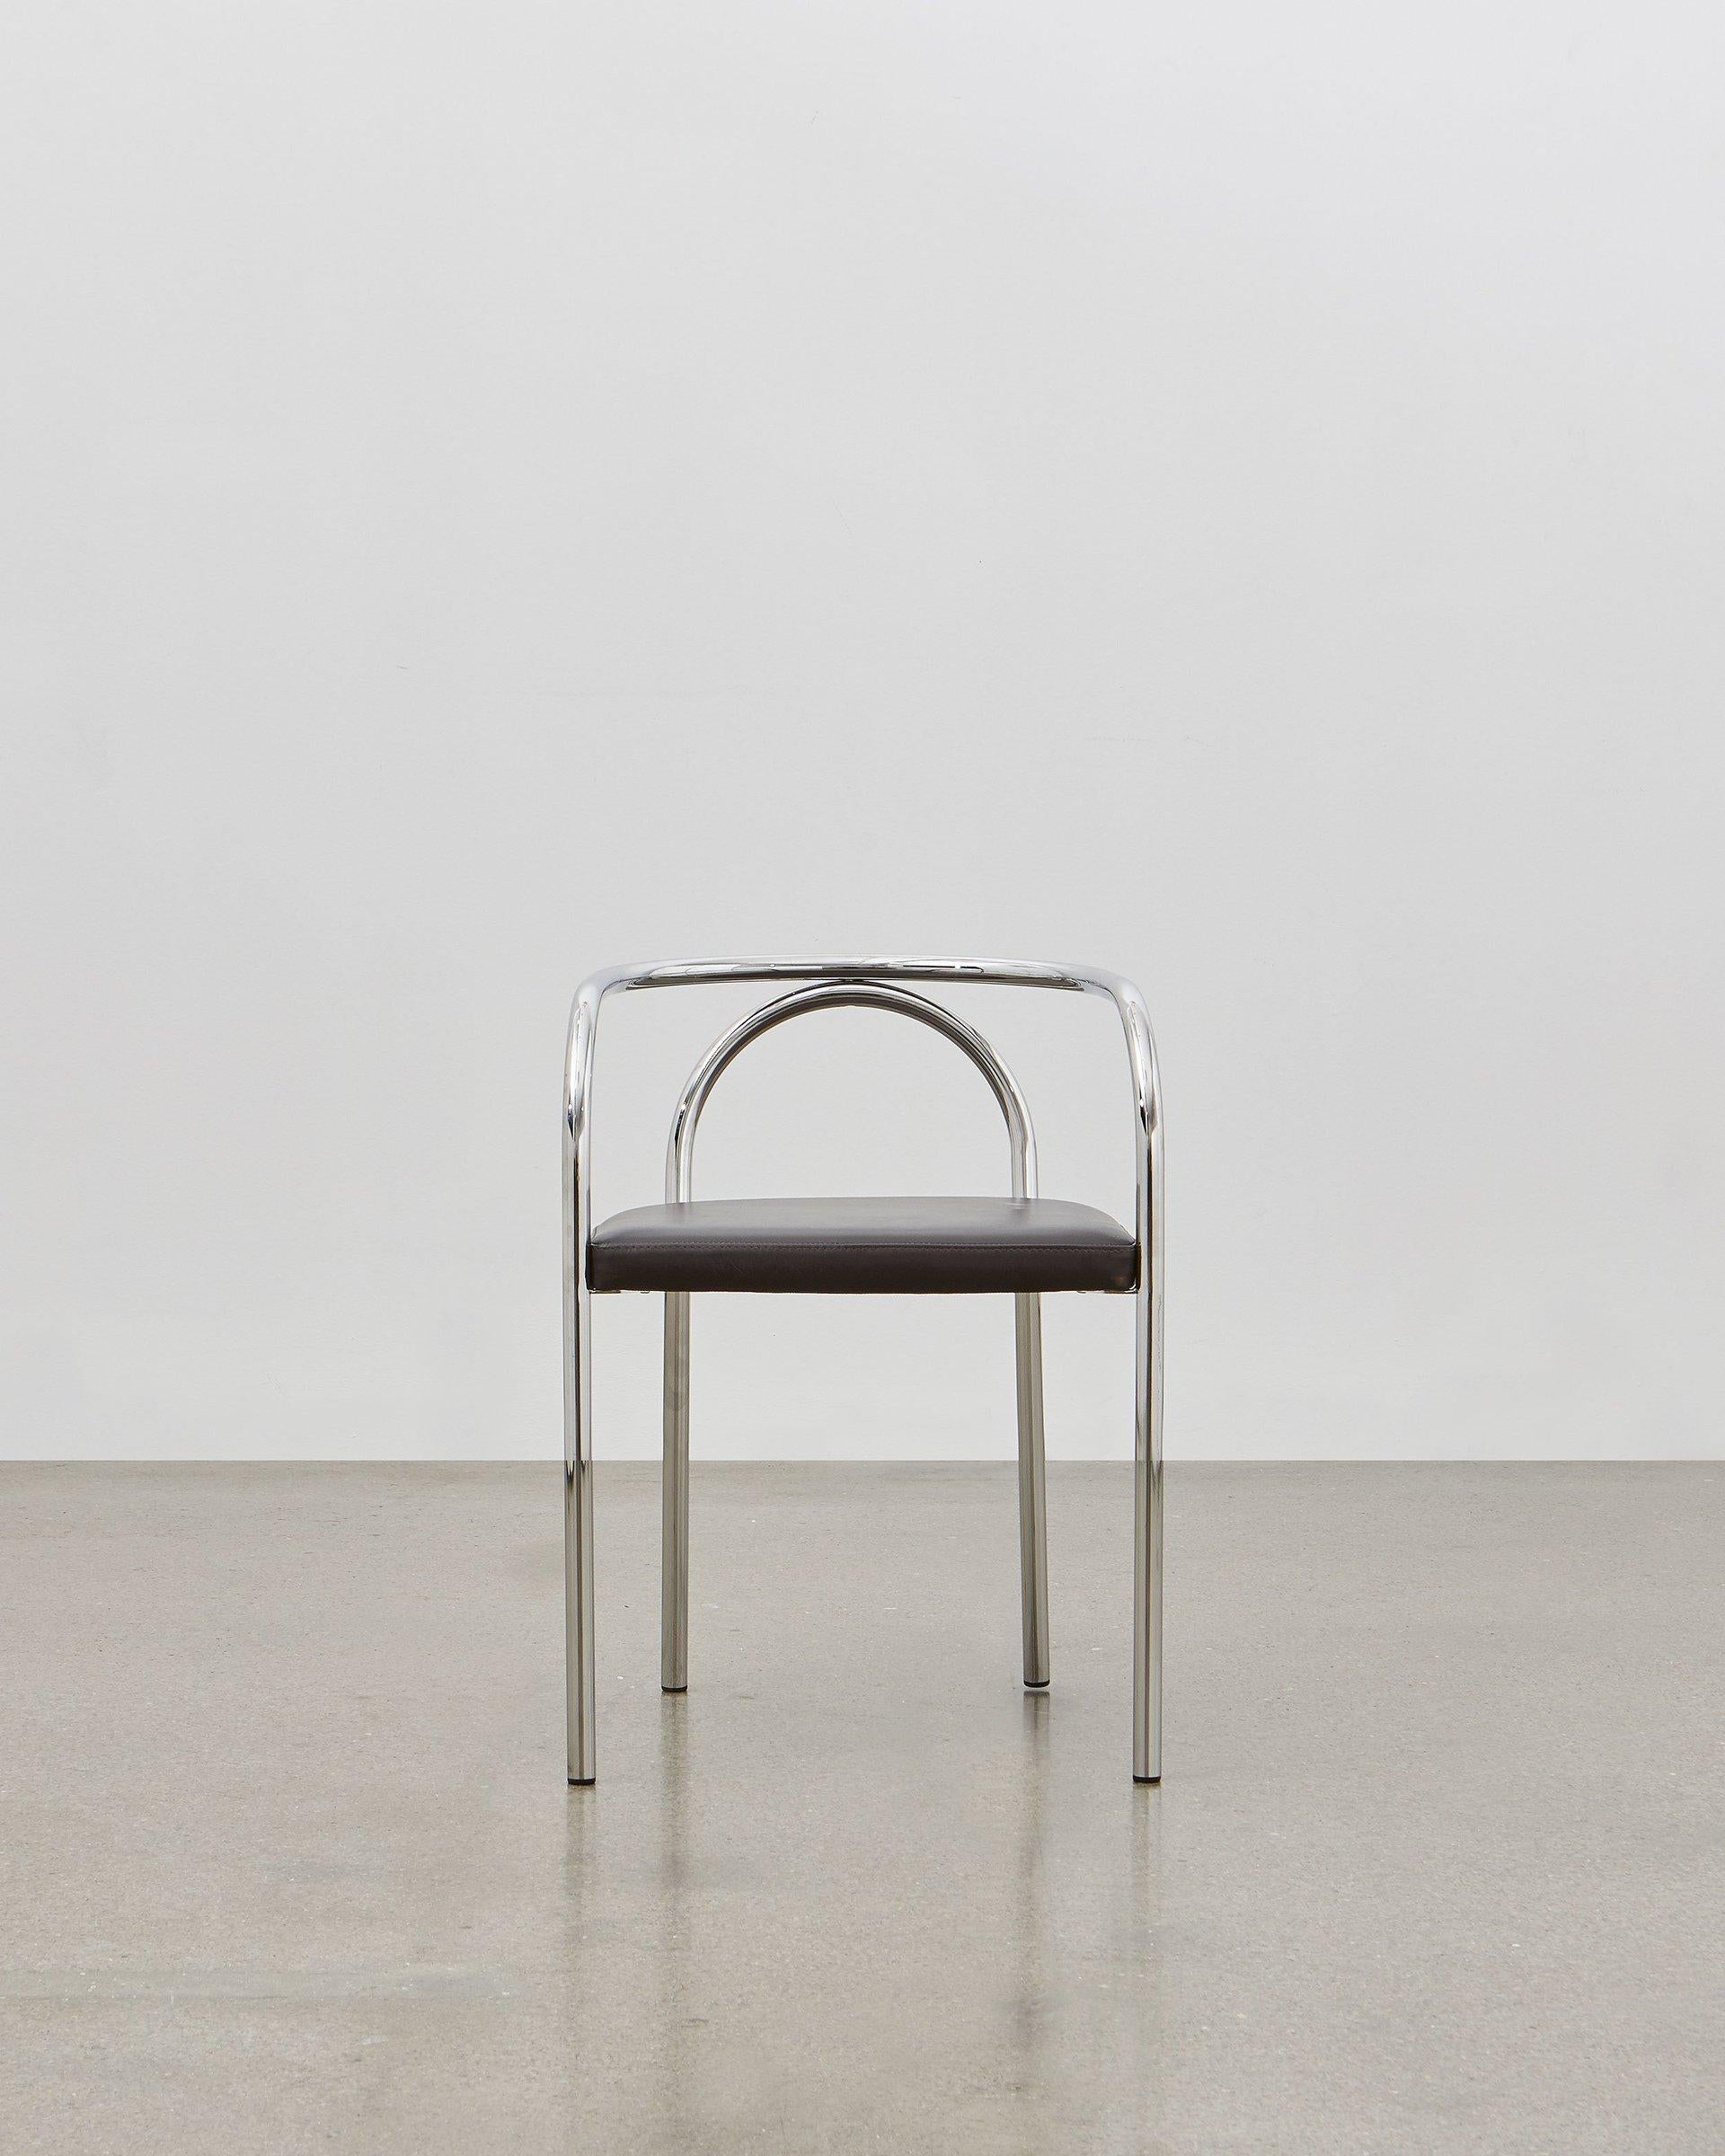 En créant la PH Chair, Poul Henningsen a cherché à réinventer un certain nombre de meubles classiques construits traditionnellement en bois, comme la chaise 